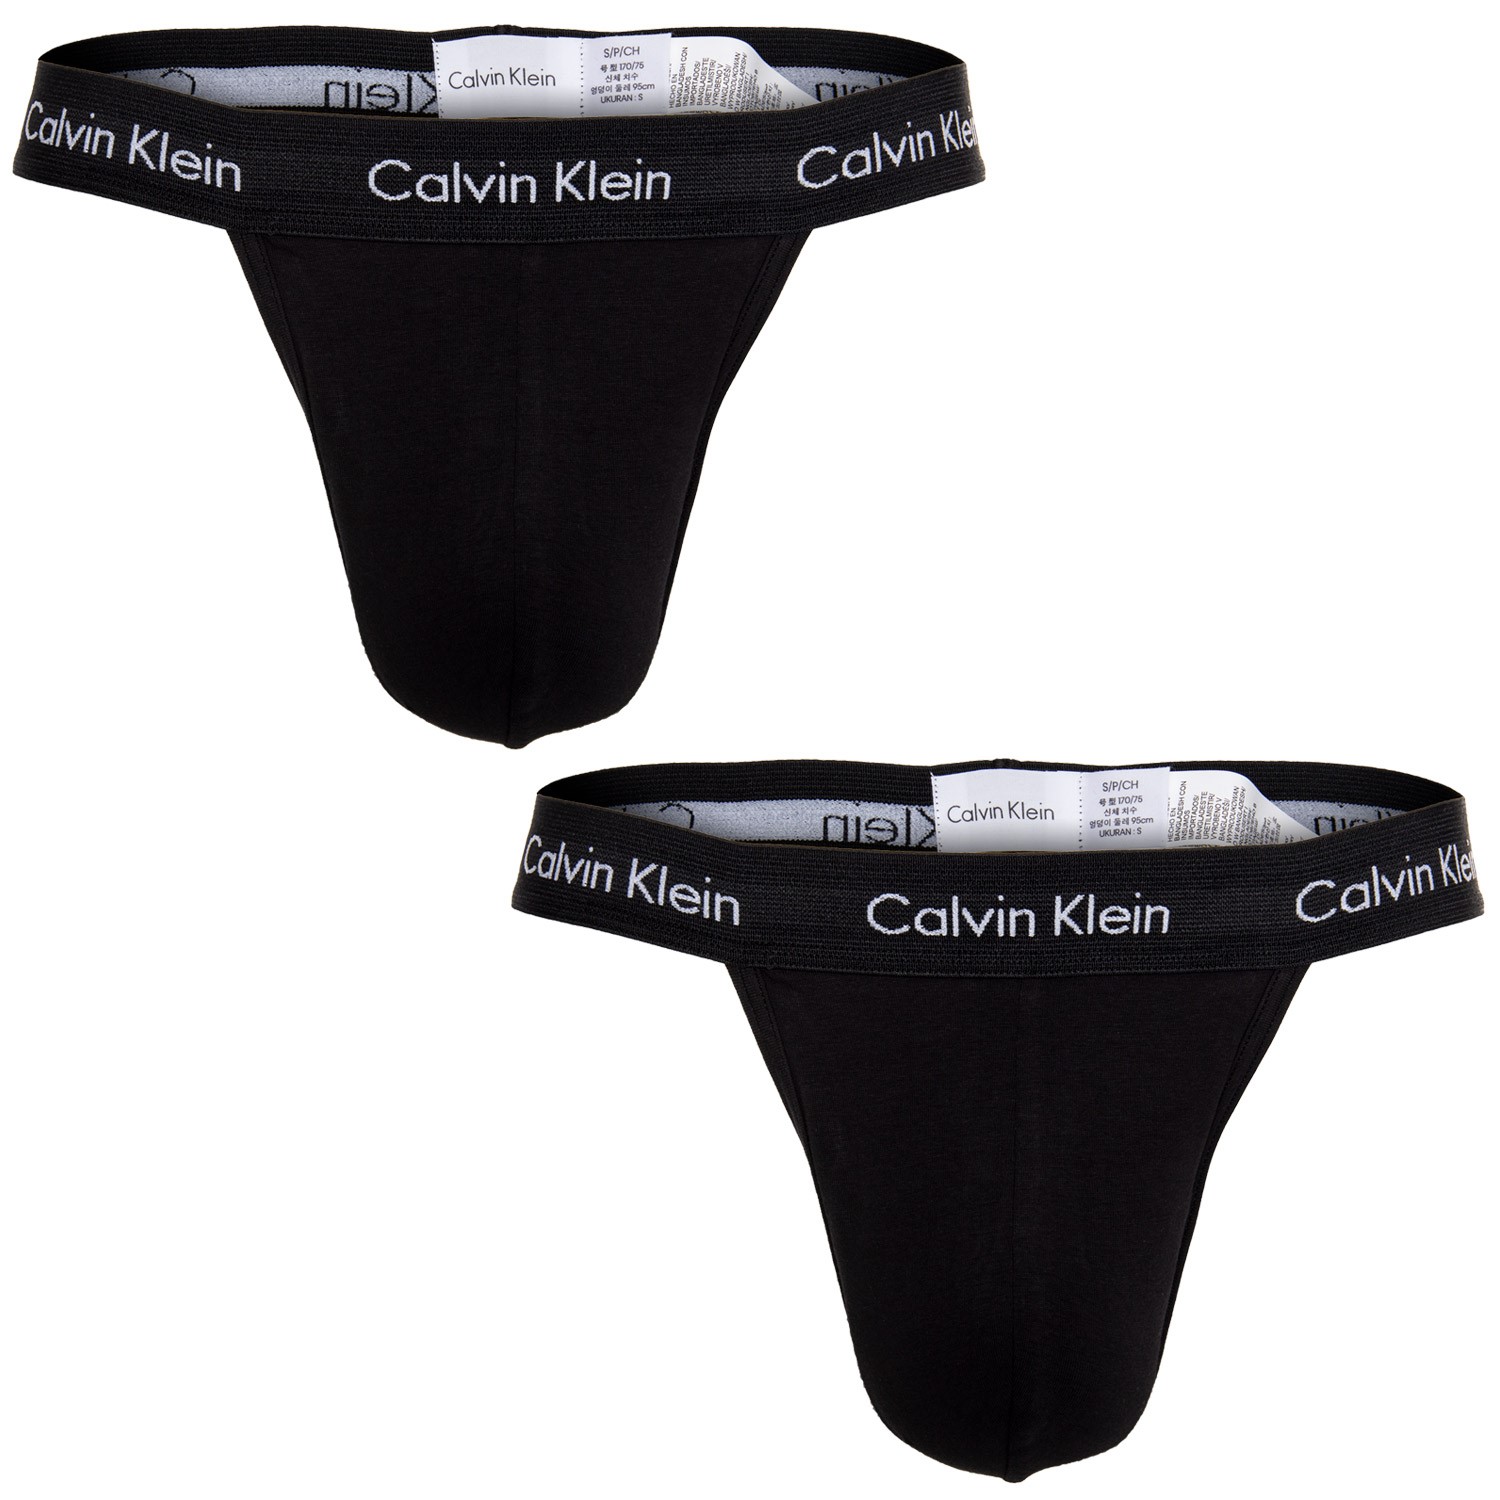 BLACK (MUSTA) Calvin Klein Underwear Stringit